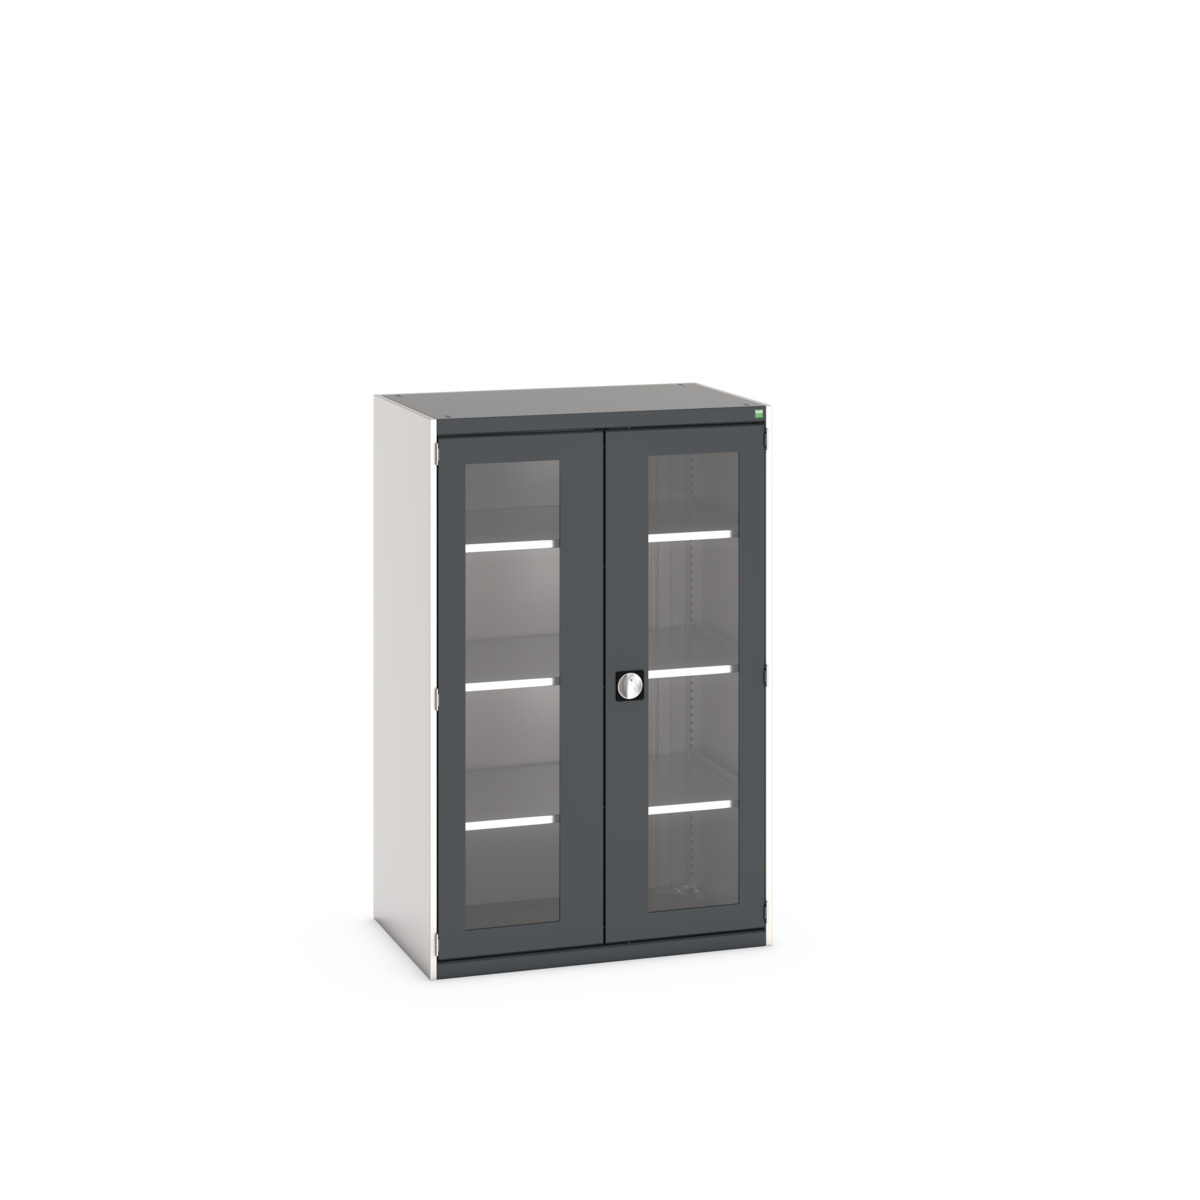 40021132.19V - cubio cupboard